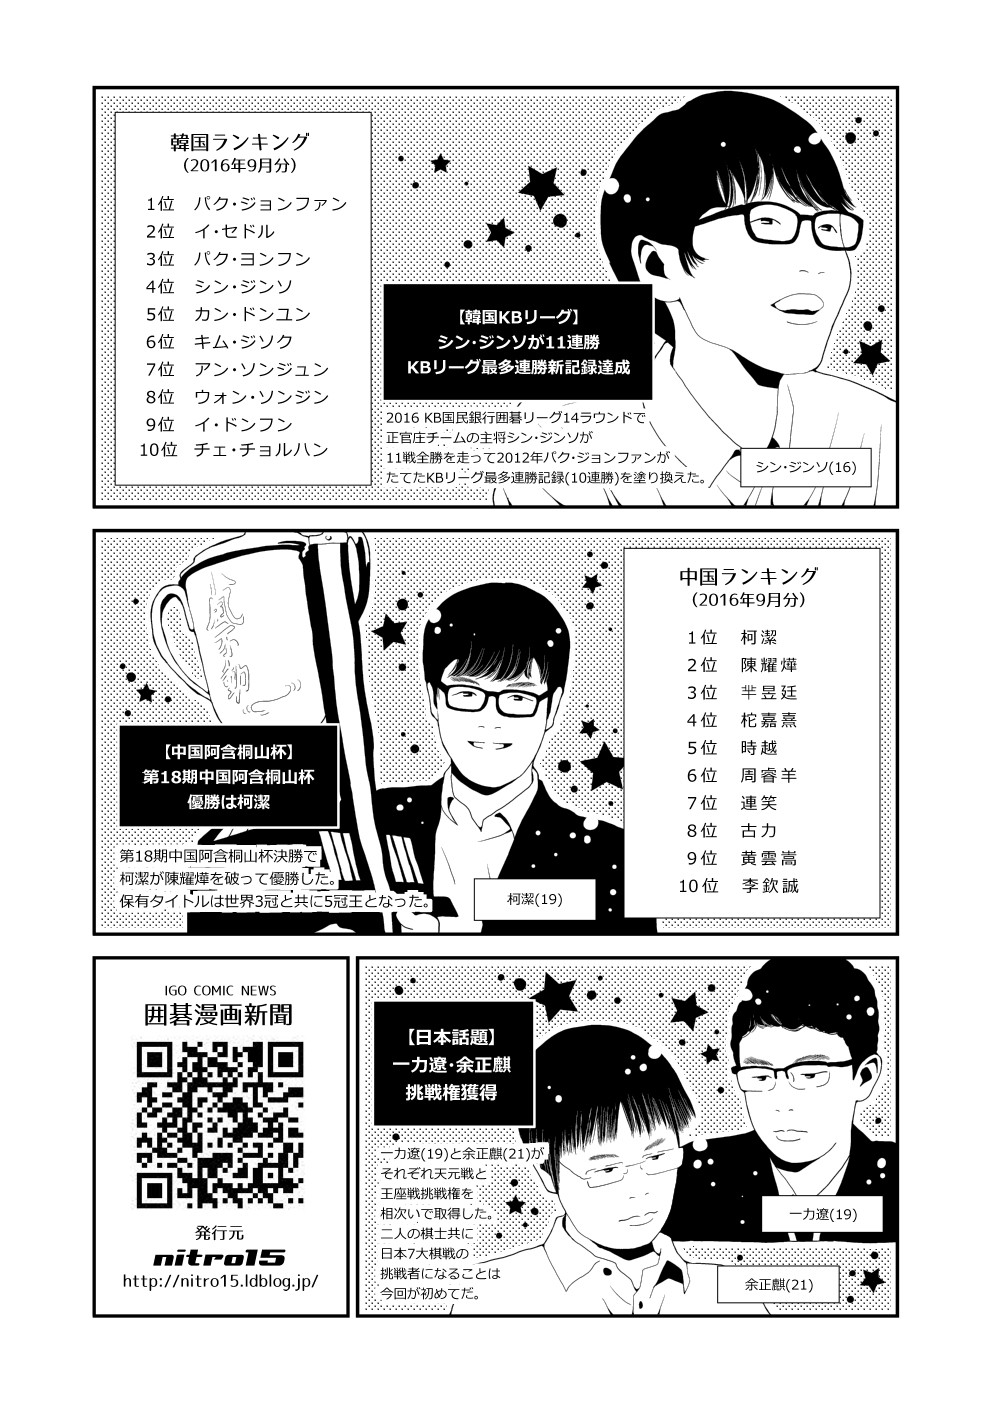 囲碁漫画新聞 16年9月号 韓国語版 中国語版有り Nitro15